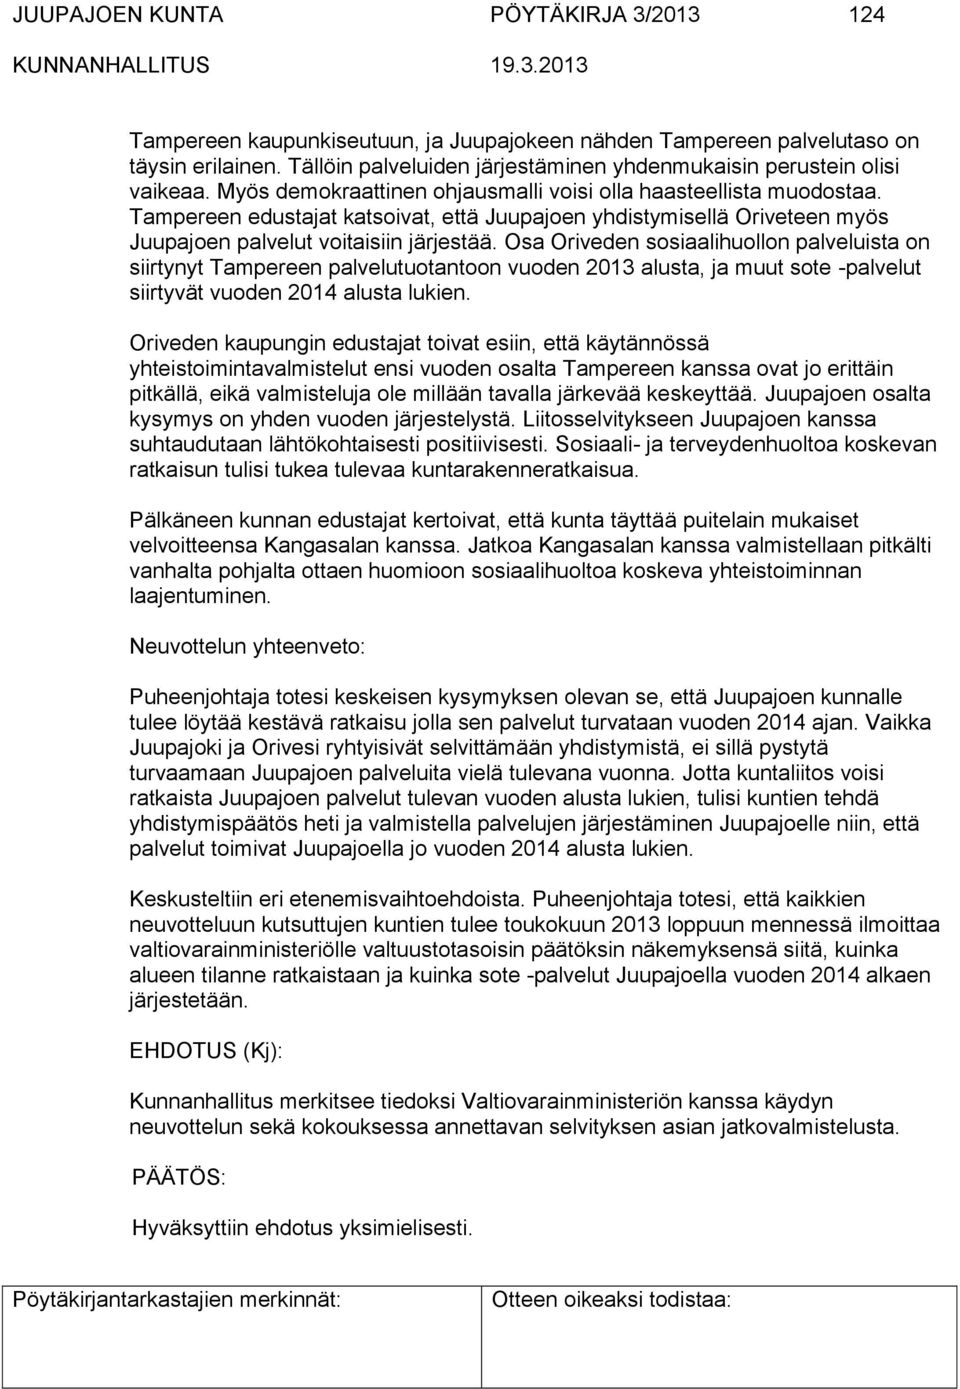 Tampereen edustajat katsoivat, että Juupajoen yhdistymisellä Oriveteen myös Juupajoen palvelut voitaisiin järjestää.